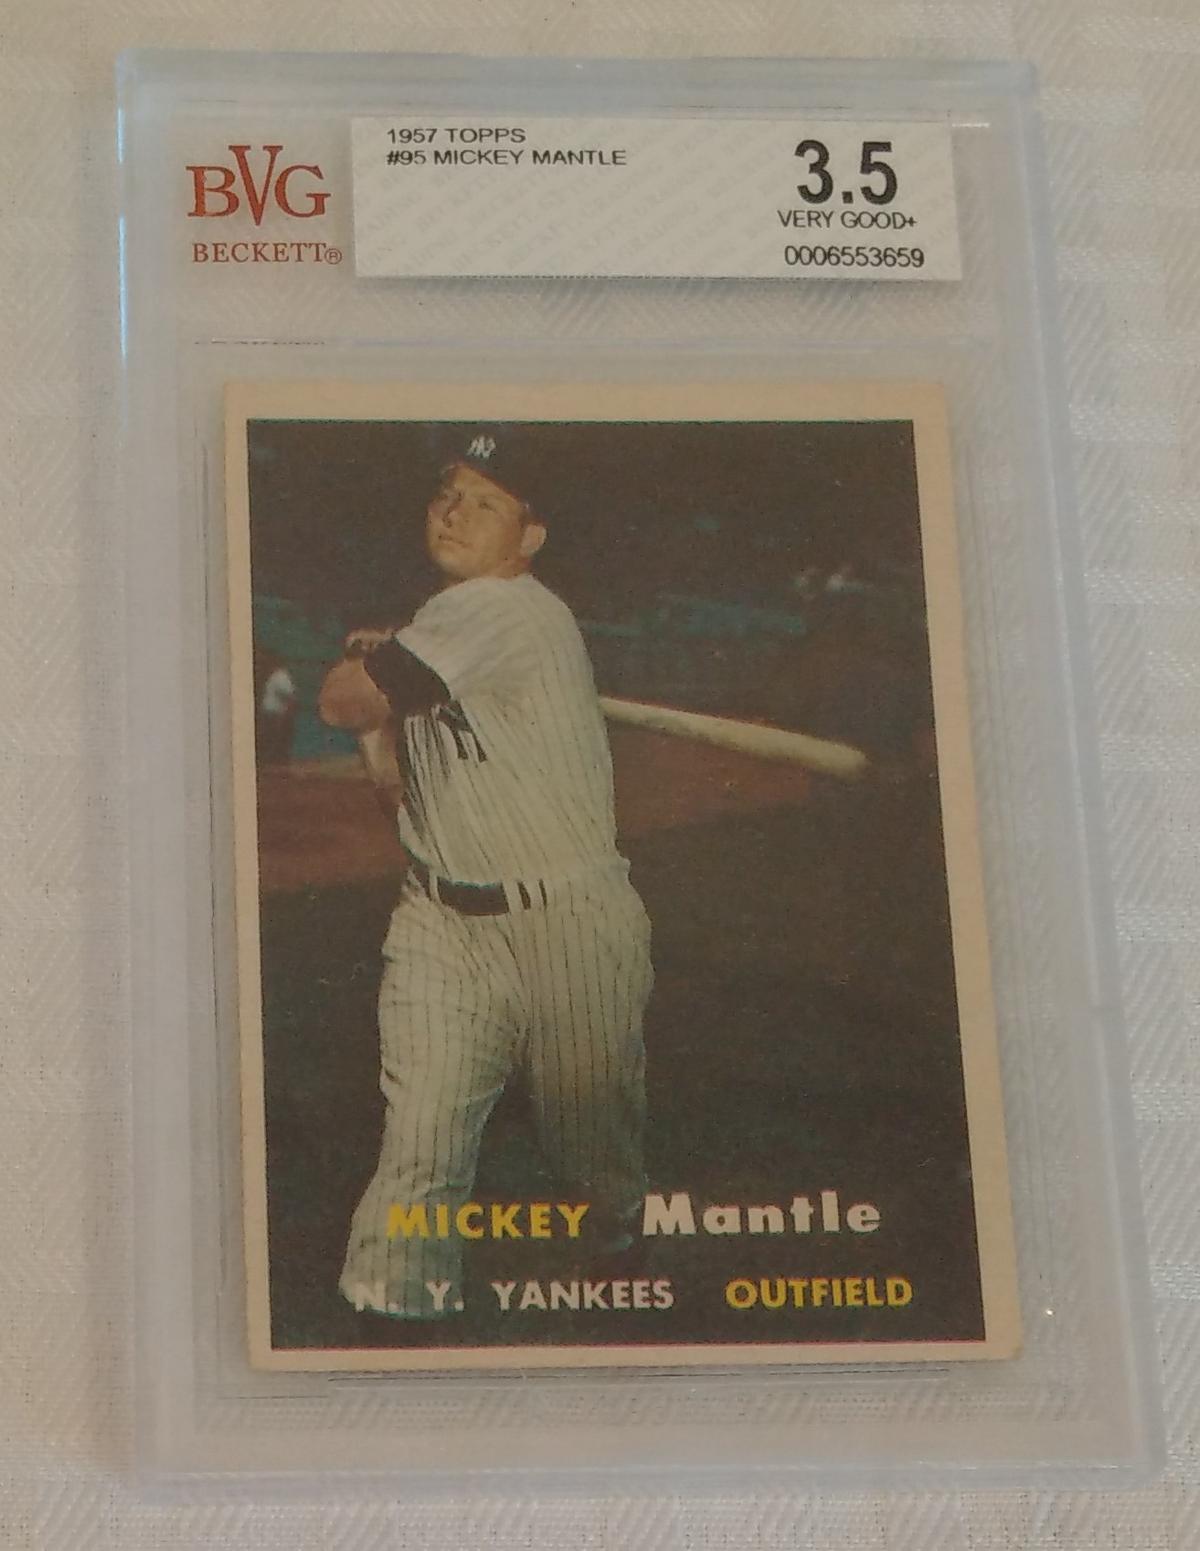 Vintage 1957 Topps Baseball Card #95 Mickey Mantle Yankees HOF Beckett GRADED 3.5 VG+ Slabbed